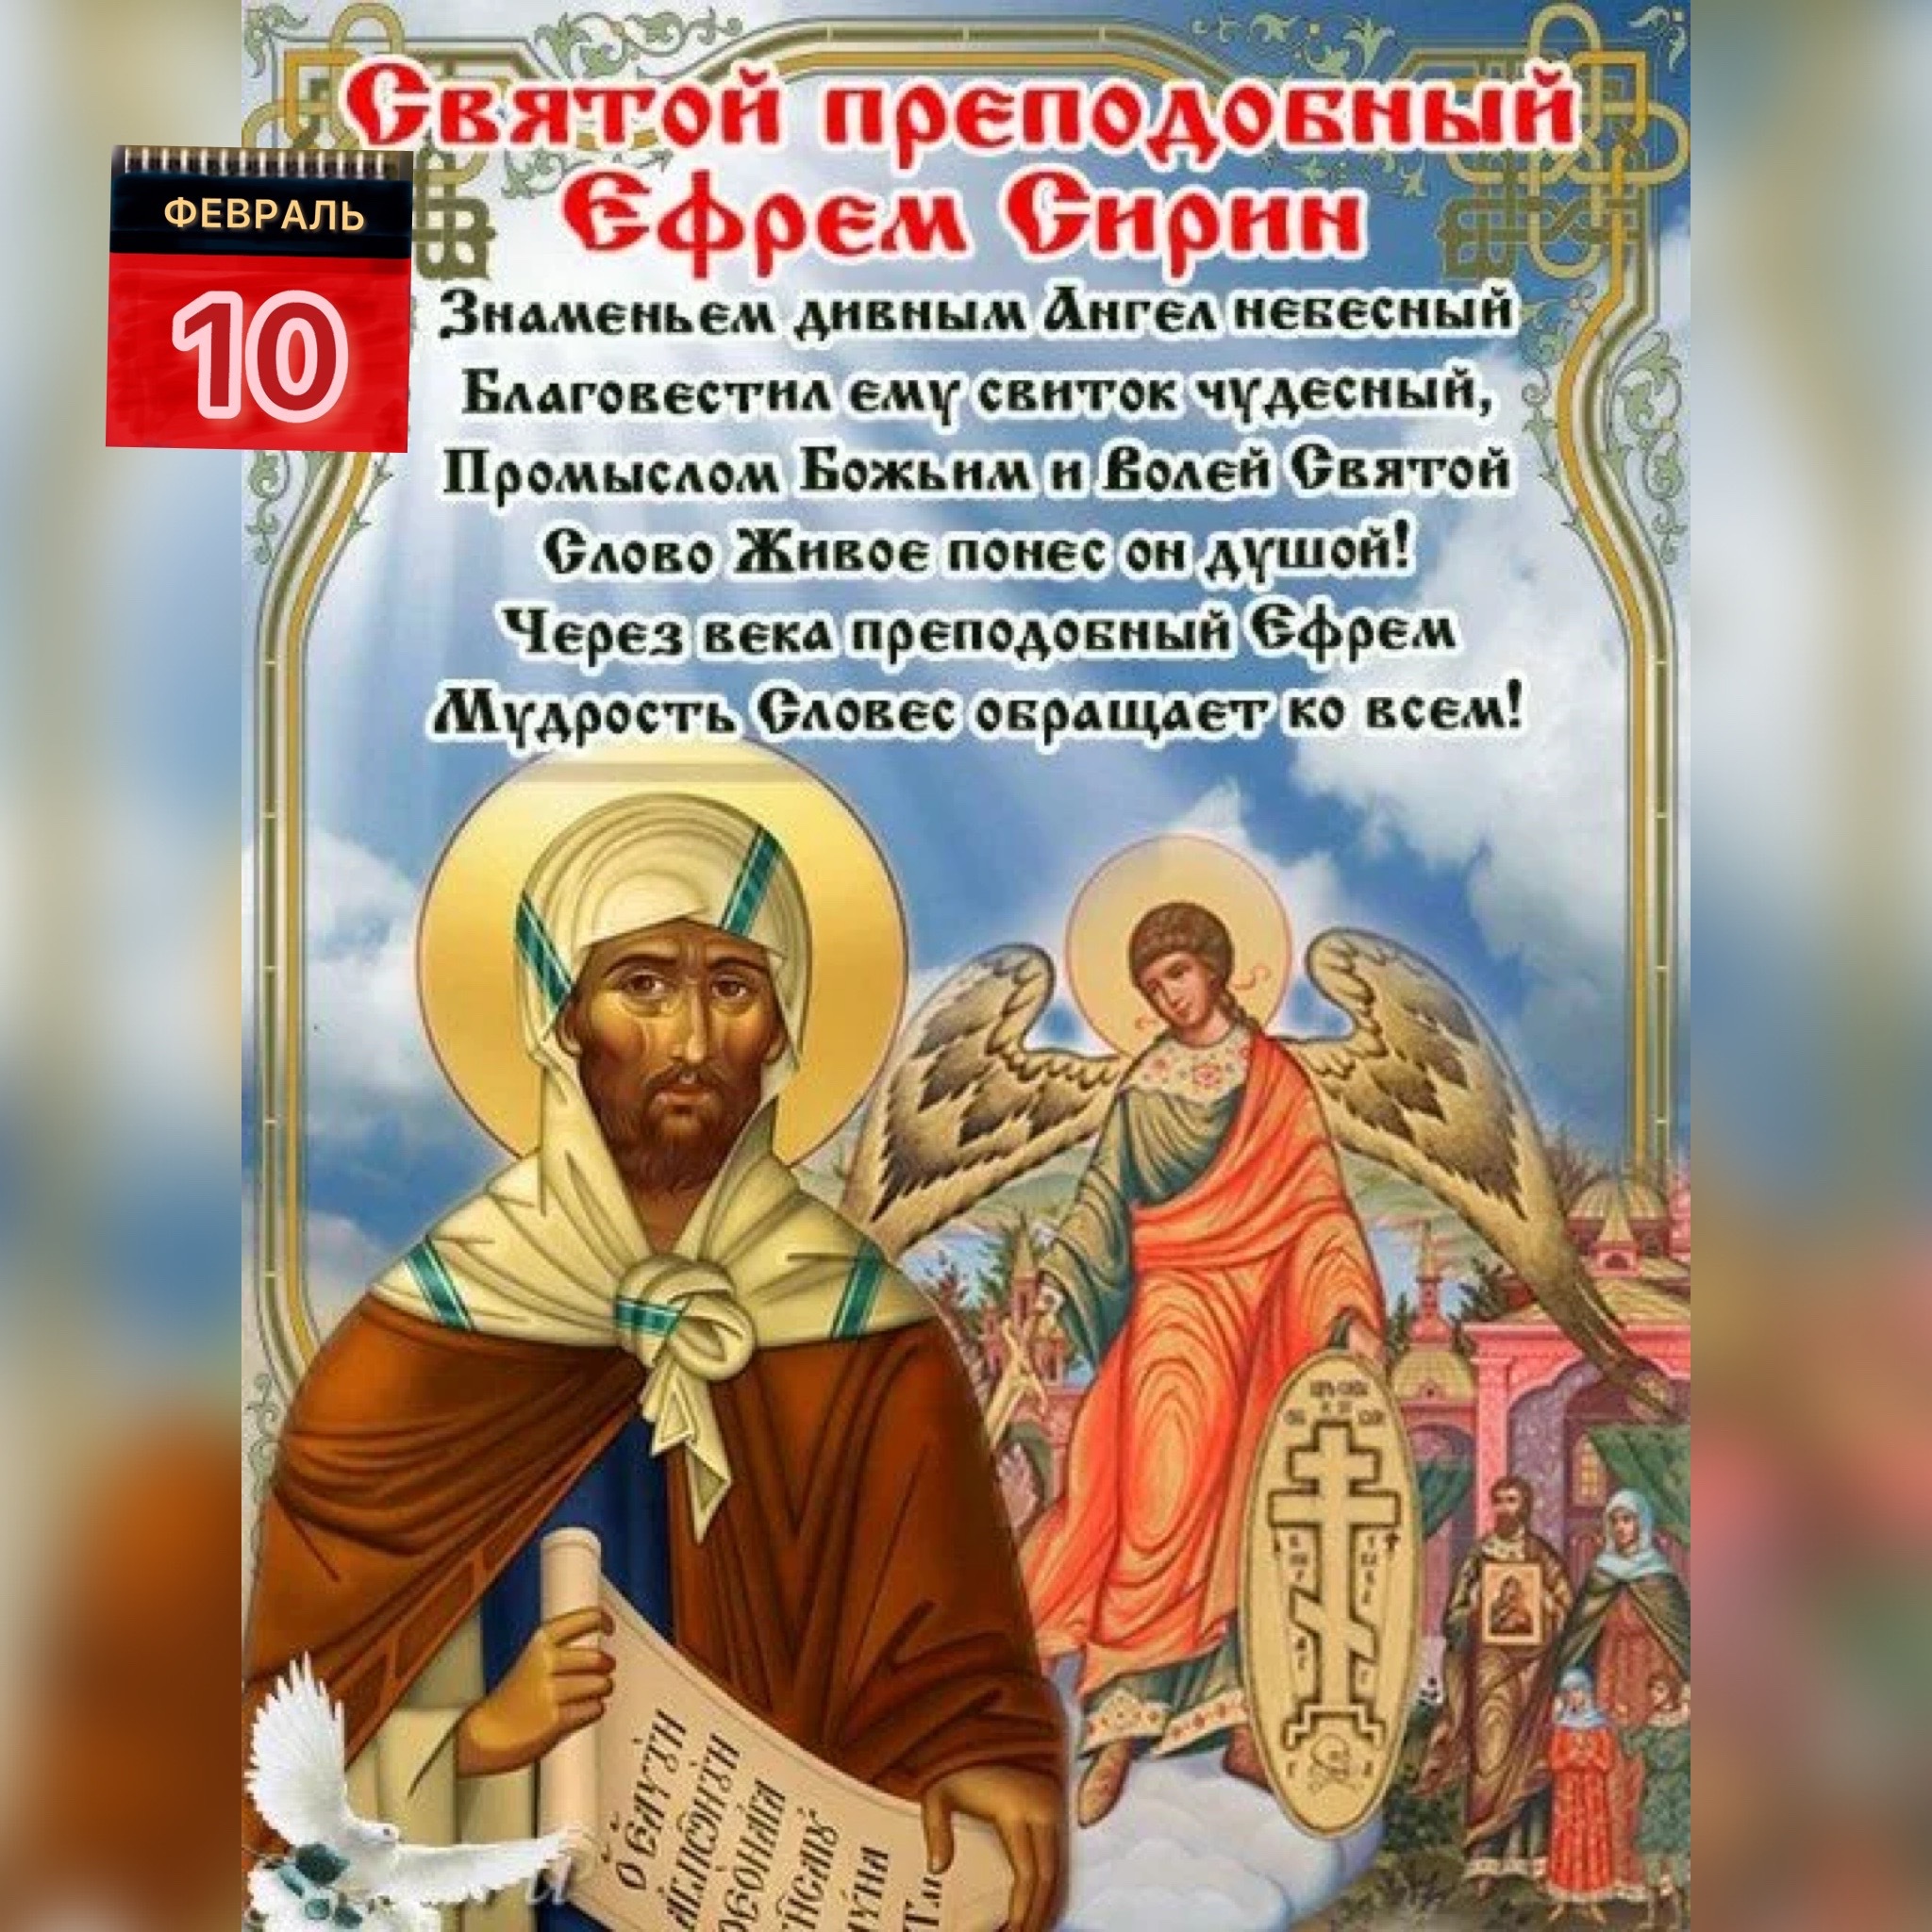 10 Февраля день преподобного Ефрема Сирина